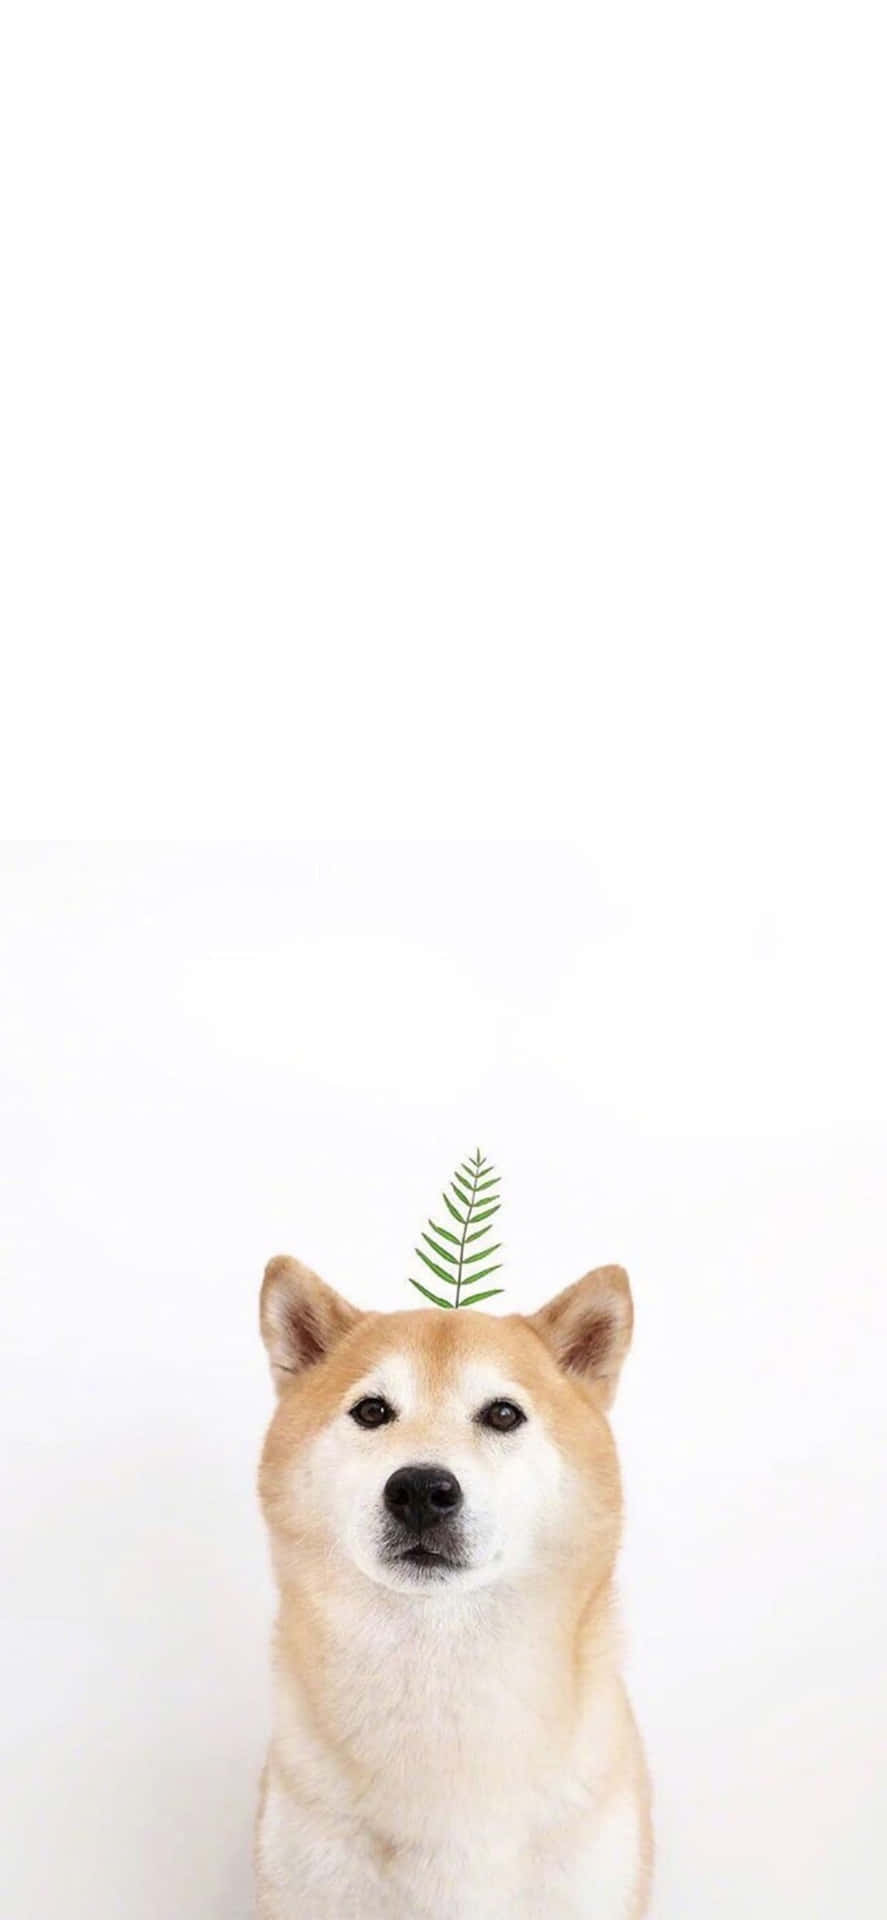 Erlebedie Natur Hautnah Mit Diesem Entzückenden Cute Animal Iphone Hintergrundbild. Wallpaper